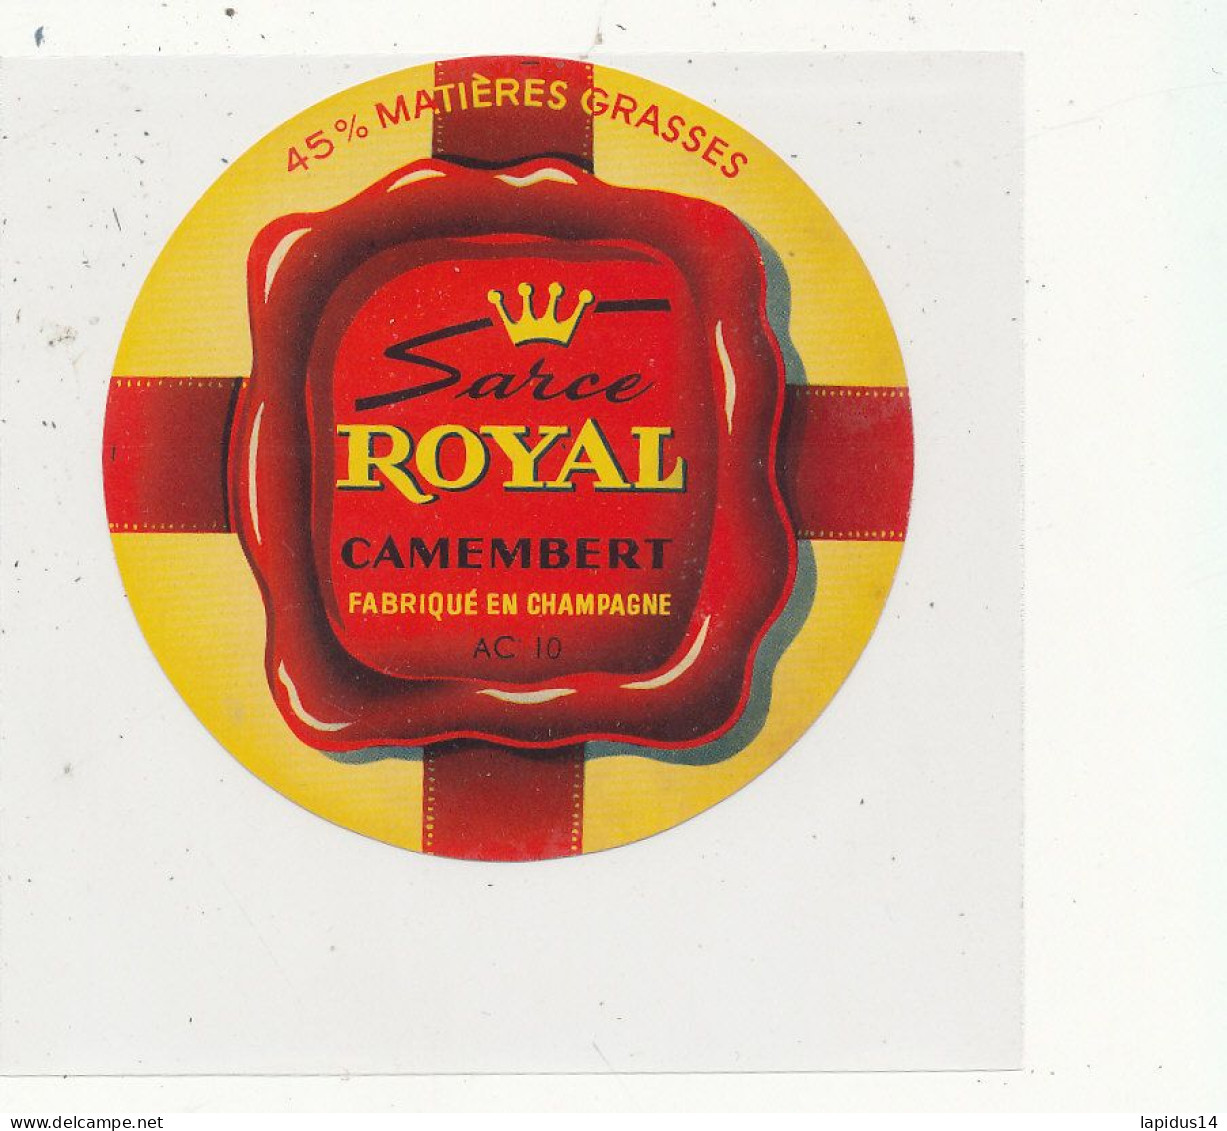 G G 380 /  ETIQUETTE DE FROMAGE  CAMEMBERT  SARCE ROYAL   FABRIQUE EN CHAMPAGNE  10 A C.   ( AUBE) - Cheese